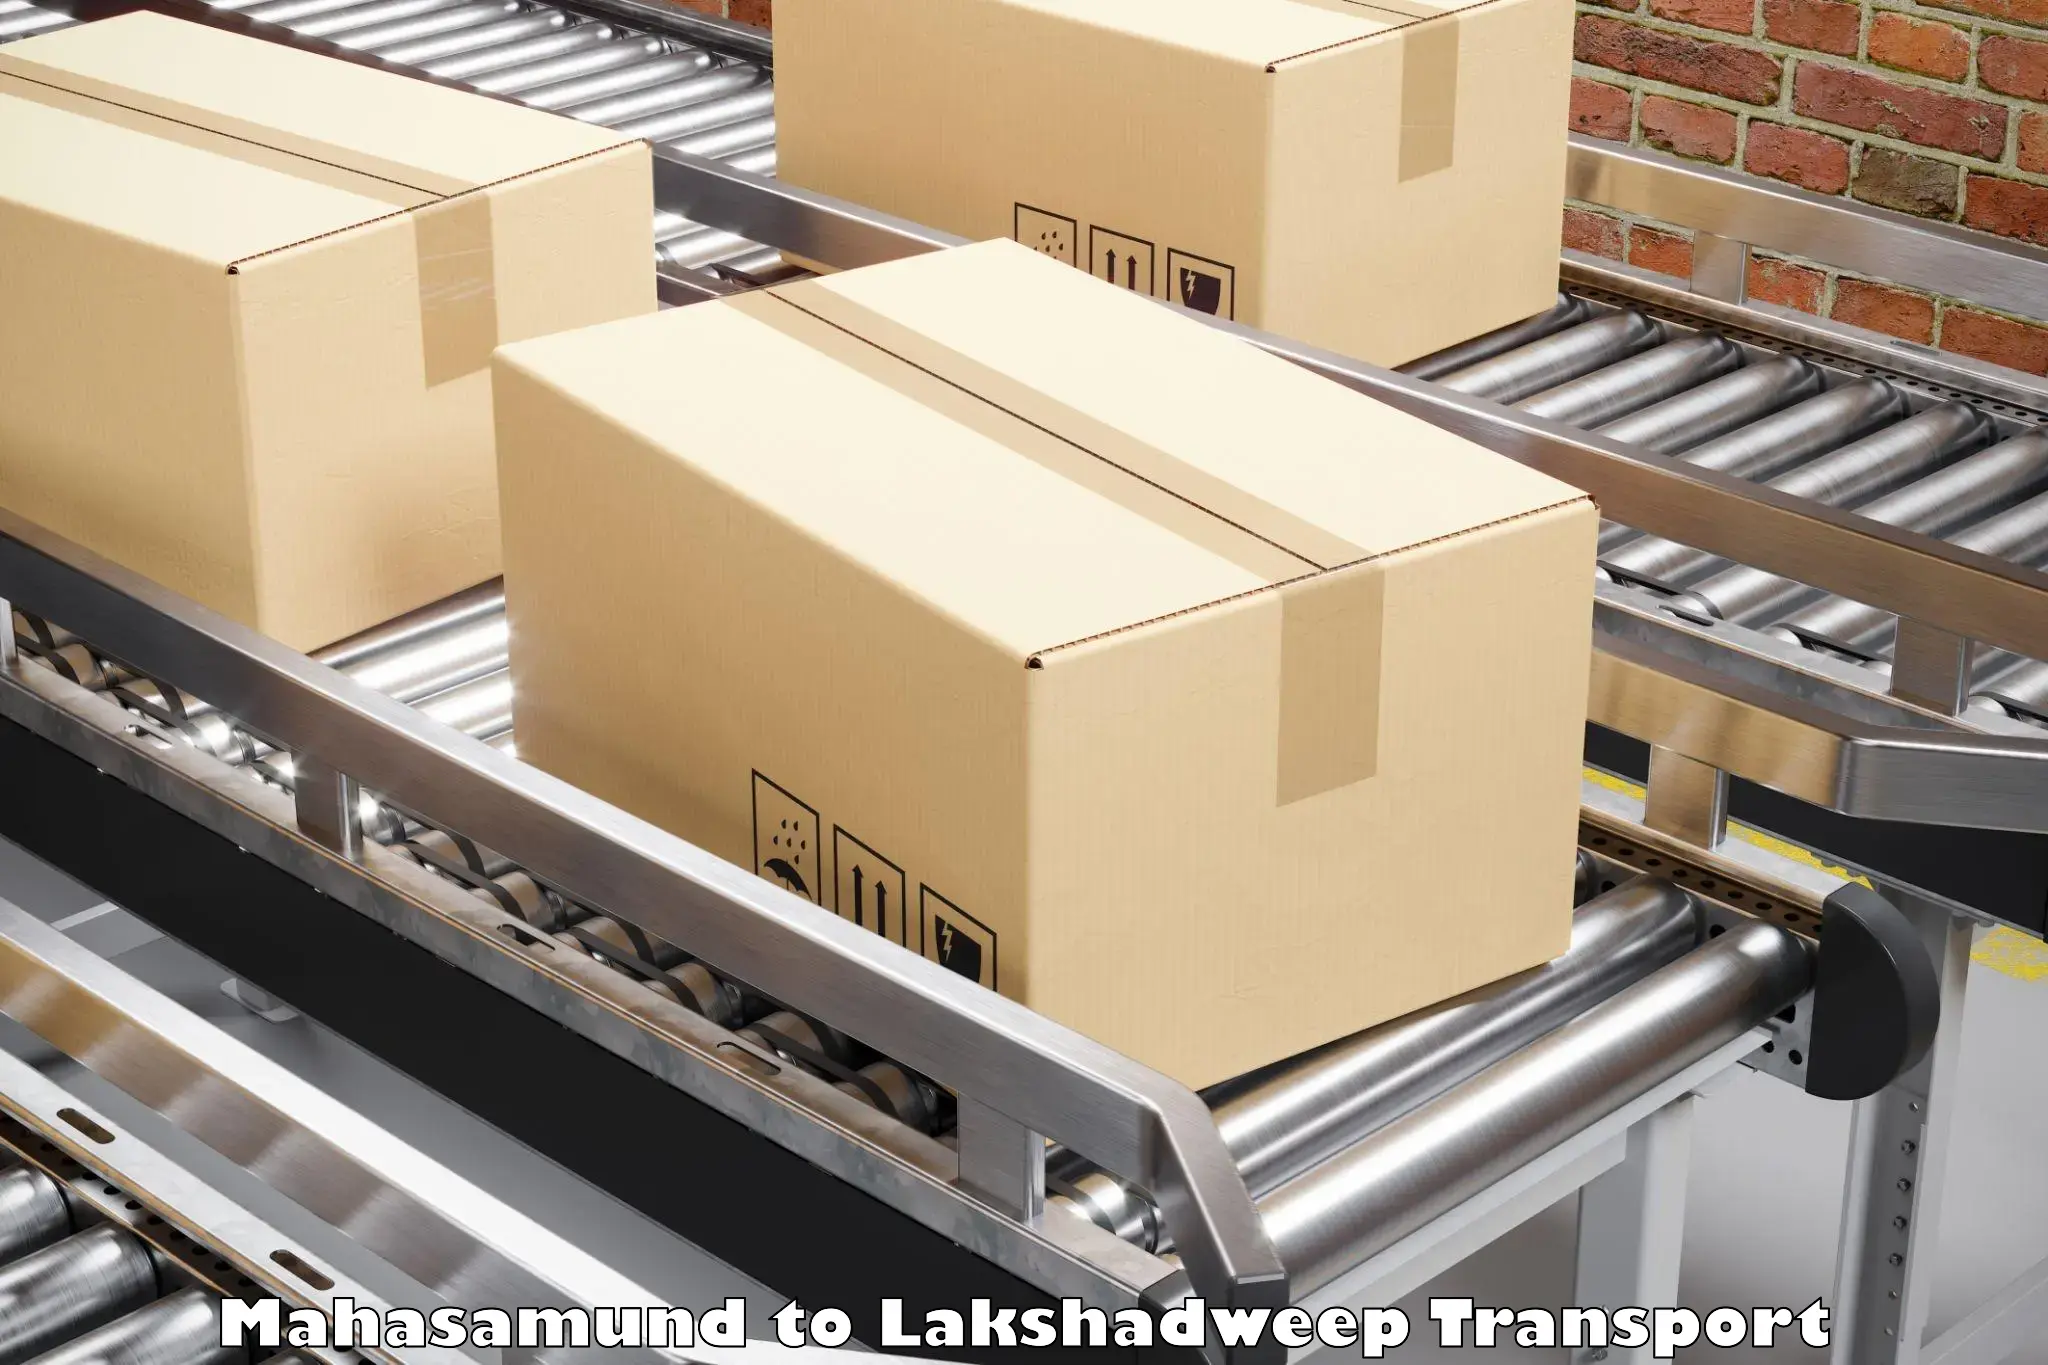 Two wheeler parcel service Mahasamund to Lakshadweep